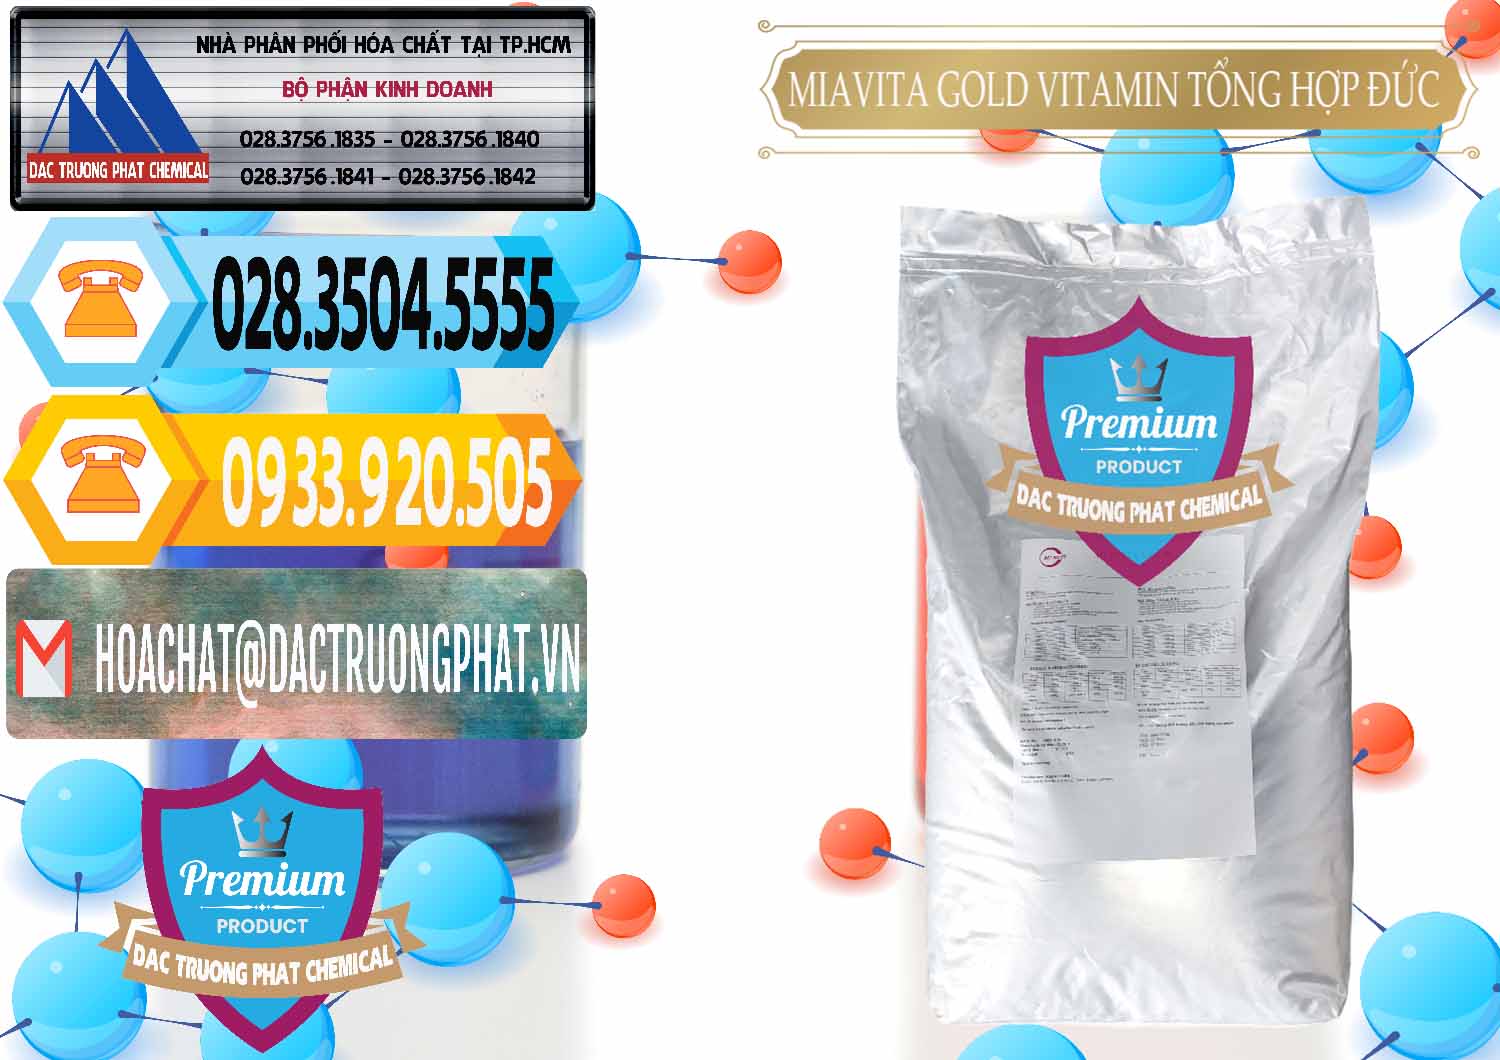 Cty nhập khẩu & bán Vitamin Tổng Hợp Miavita Gold Đức Germany - 0307 - Đơn vị chuyên cung ứng ( phân phối ) hóa chất tại TP.HCM - hoachattayrua.net